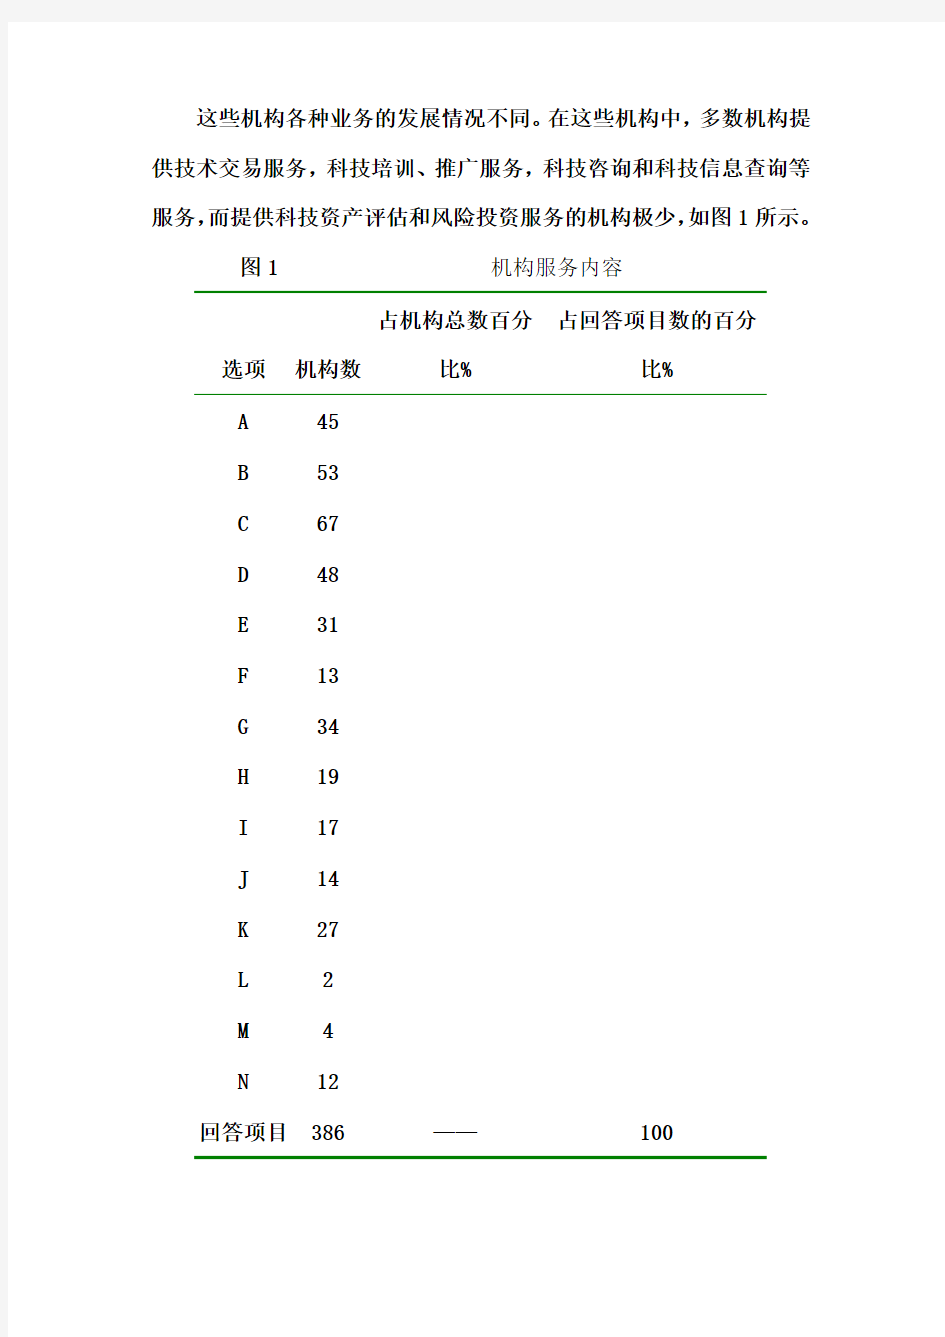 浙江省科技中介服务机构调查表分析报告